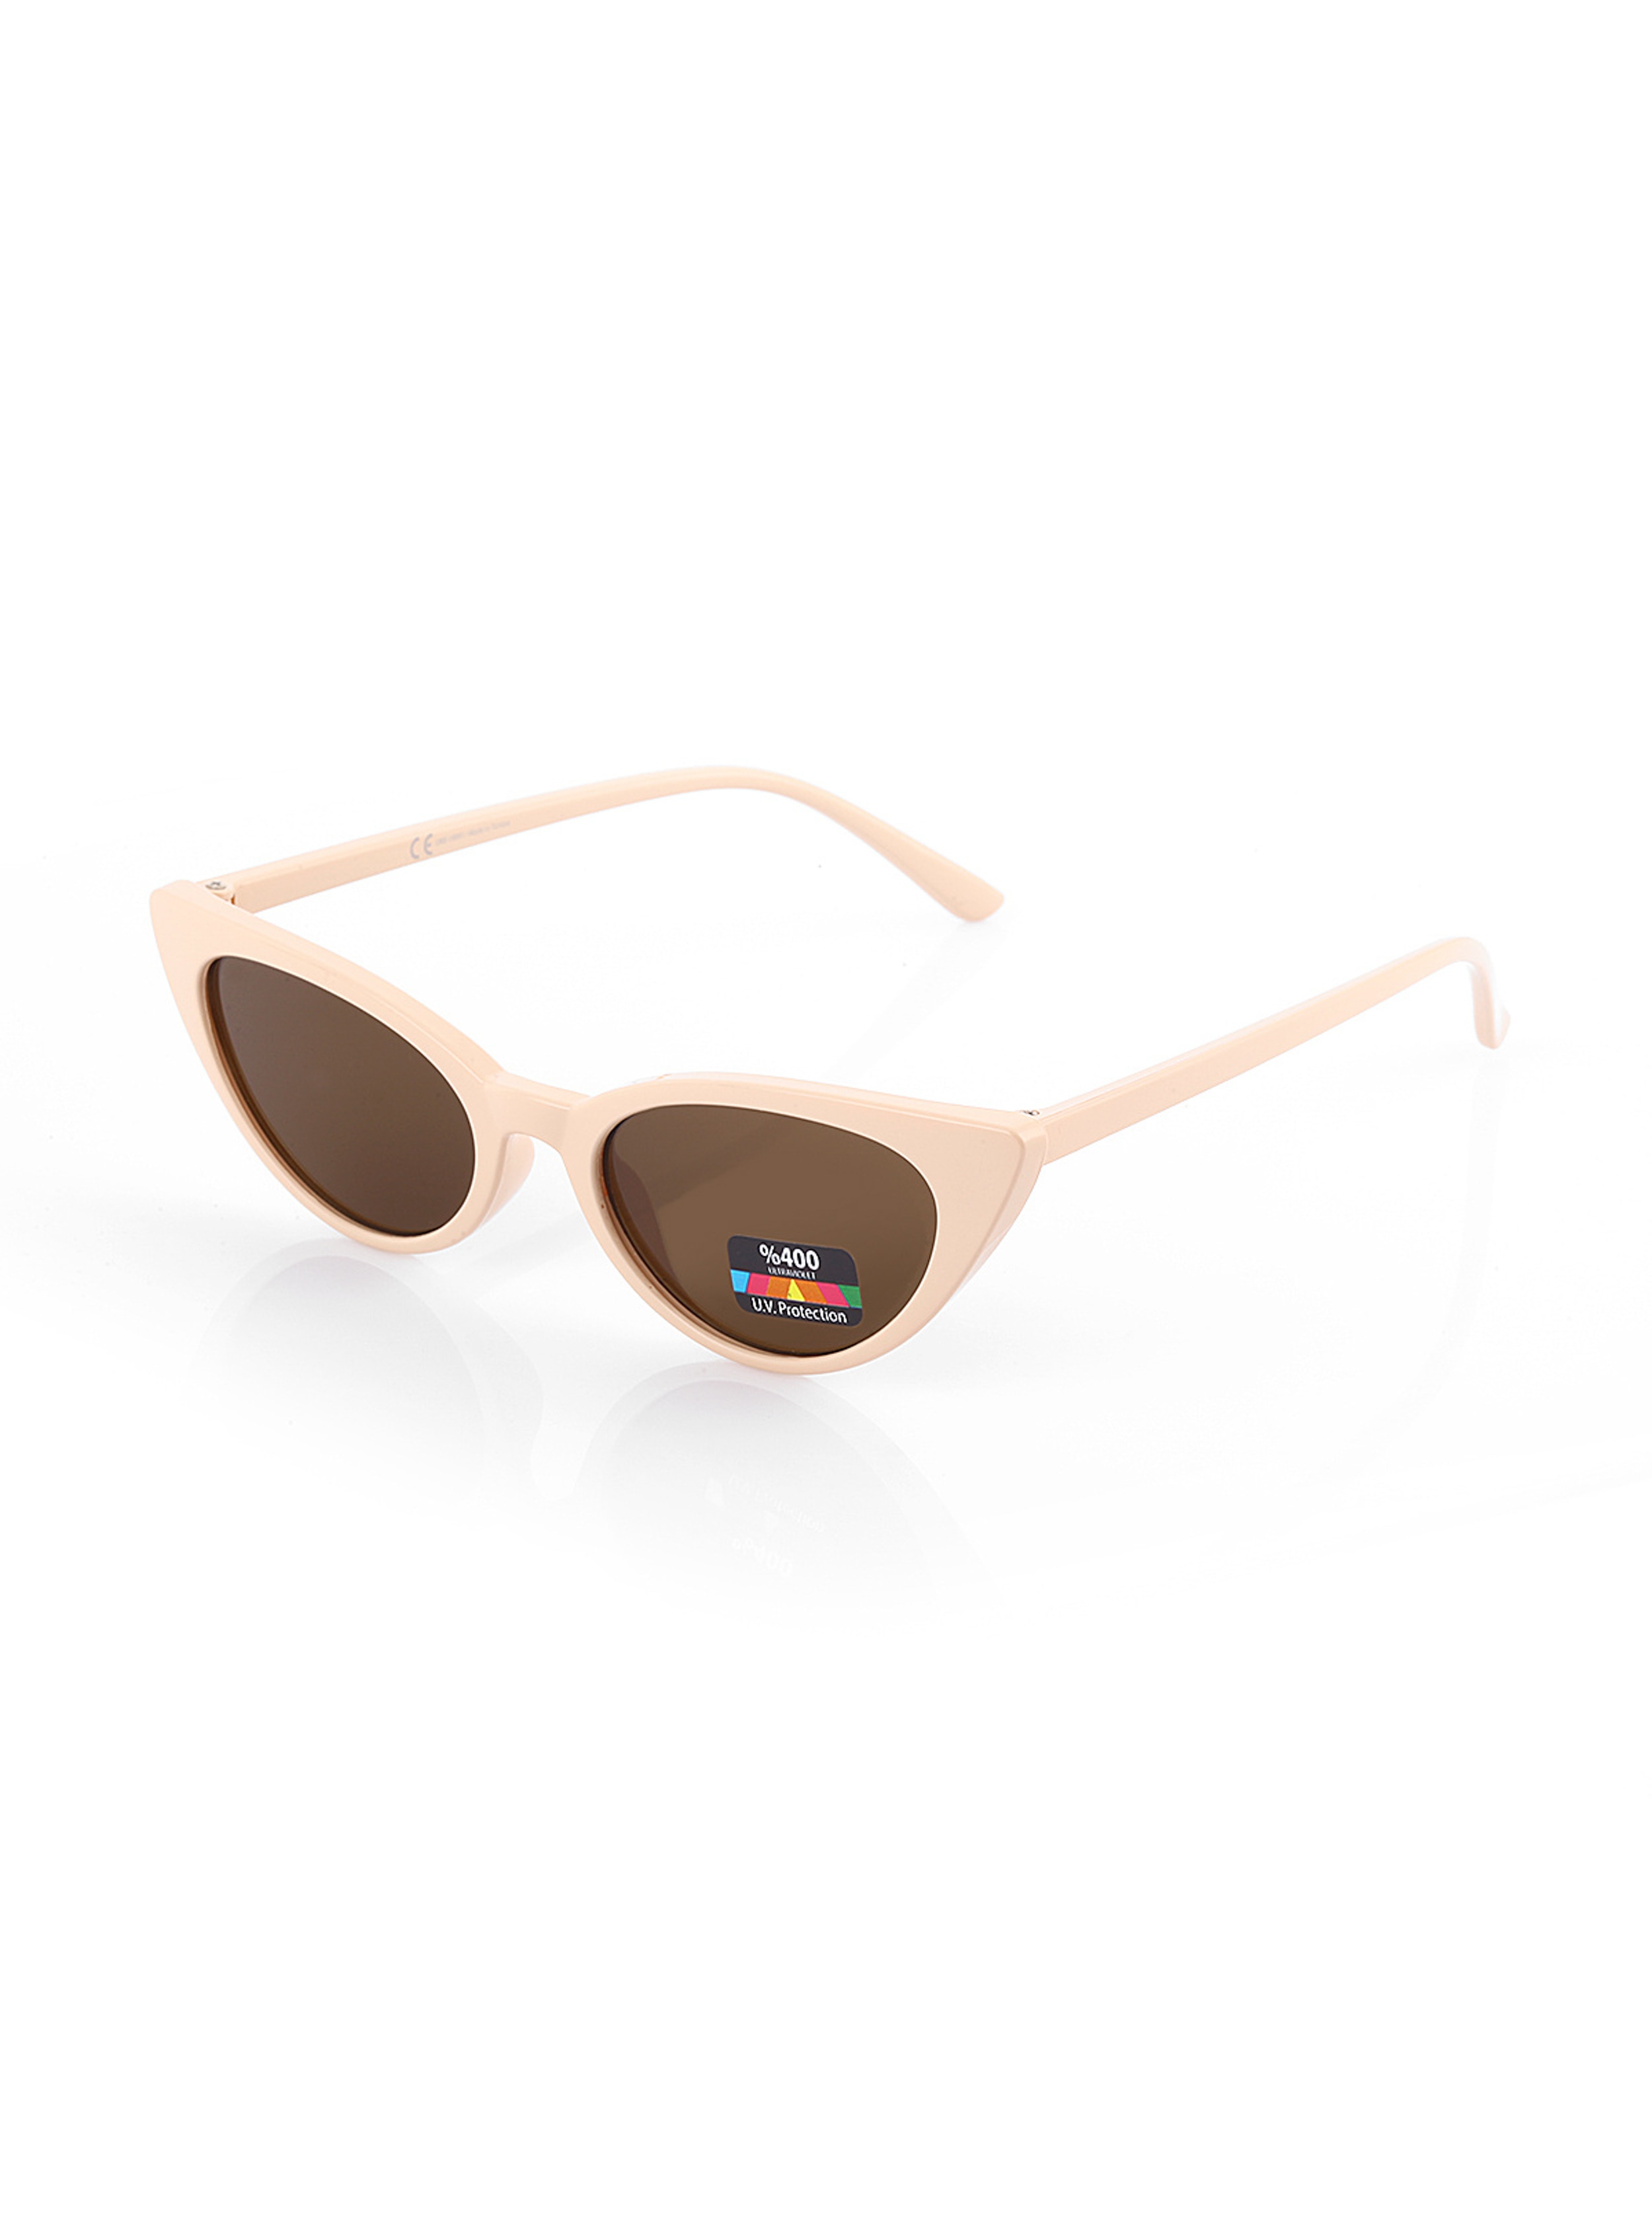 Cream - Sunglasses